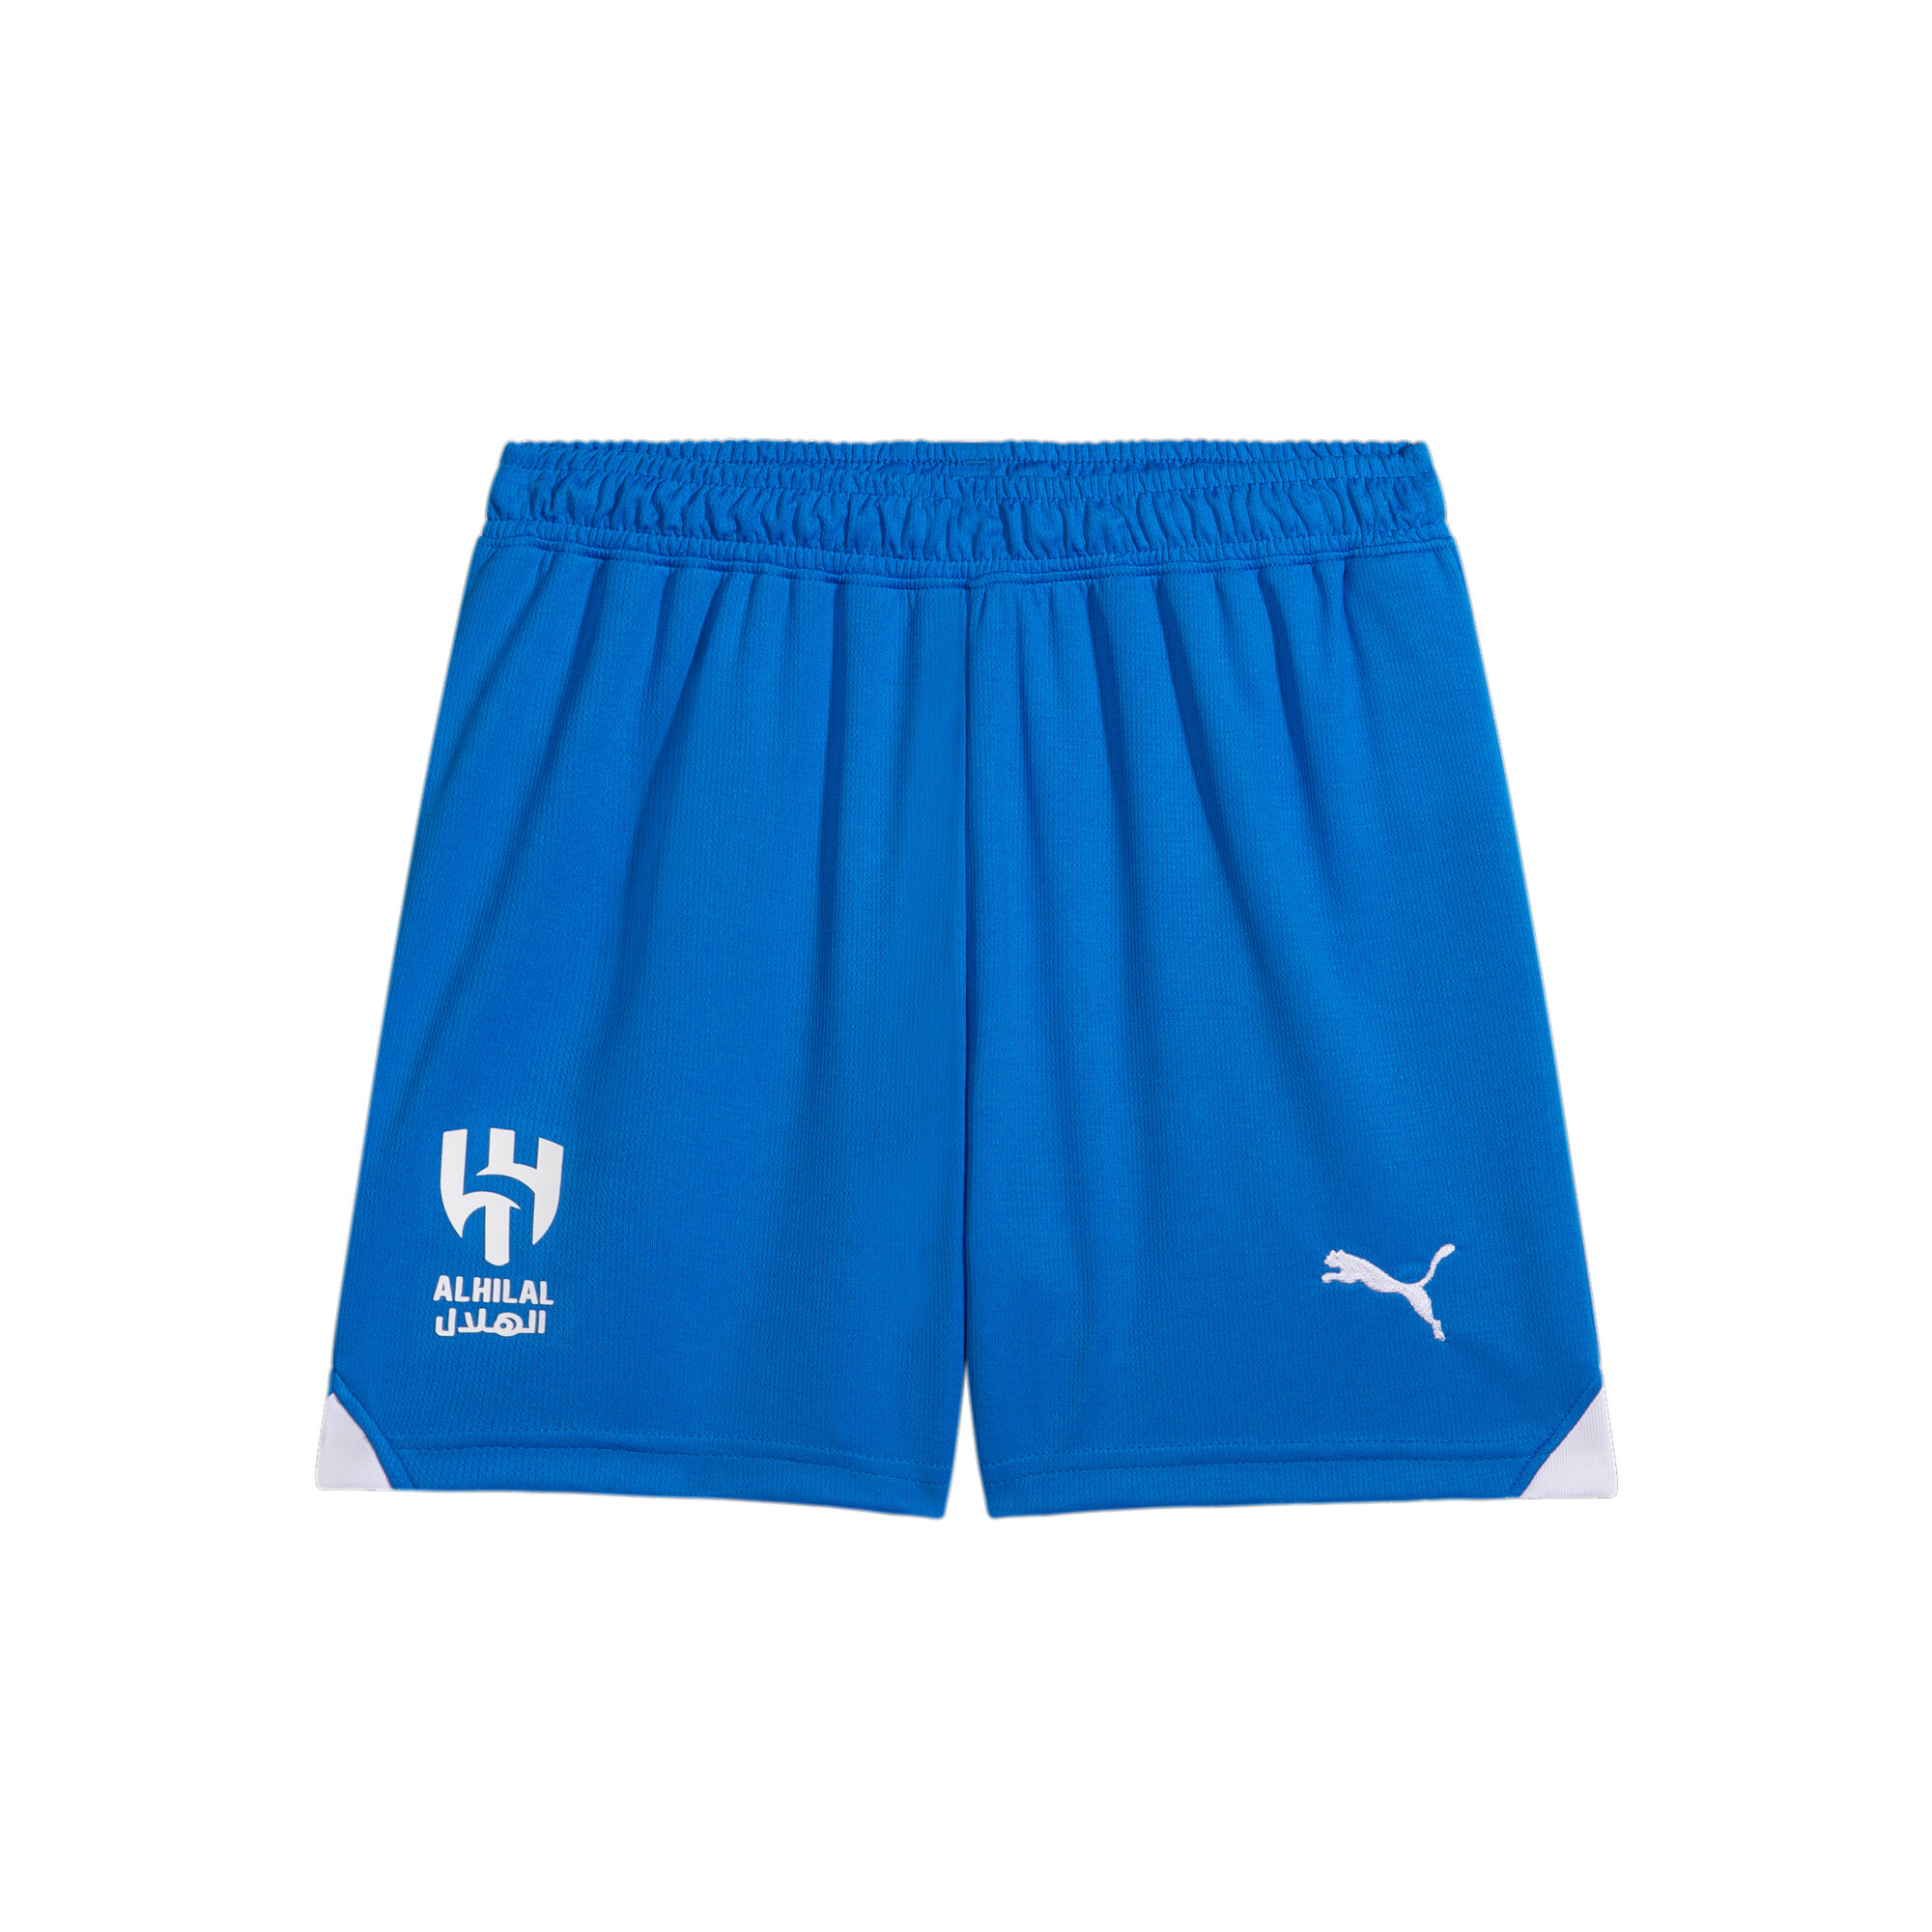 PUMA Al Hilal 23/24 Replica Shorts In Blue, Size 4-5 Youth